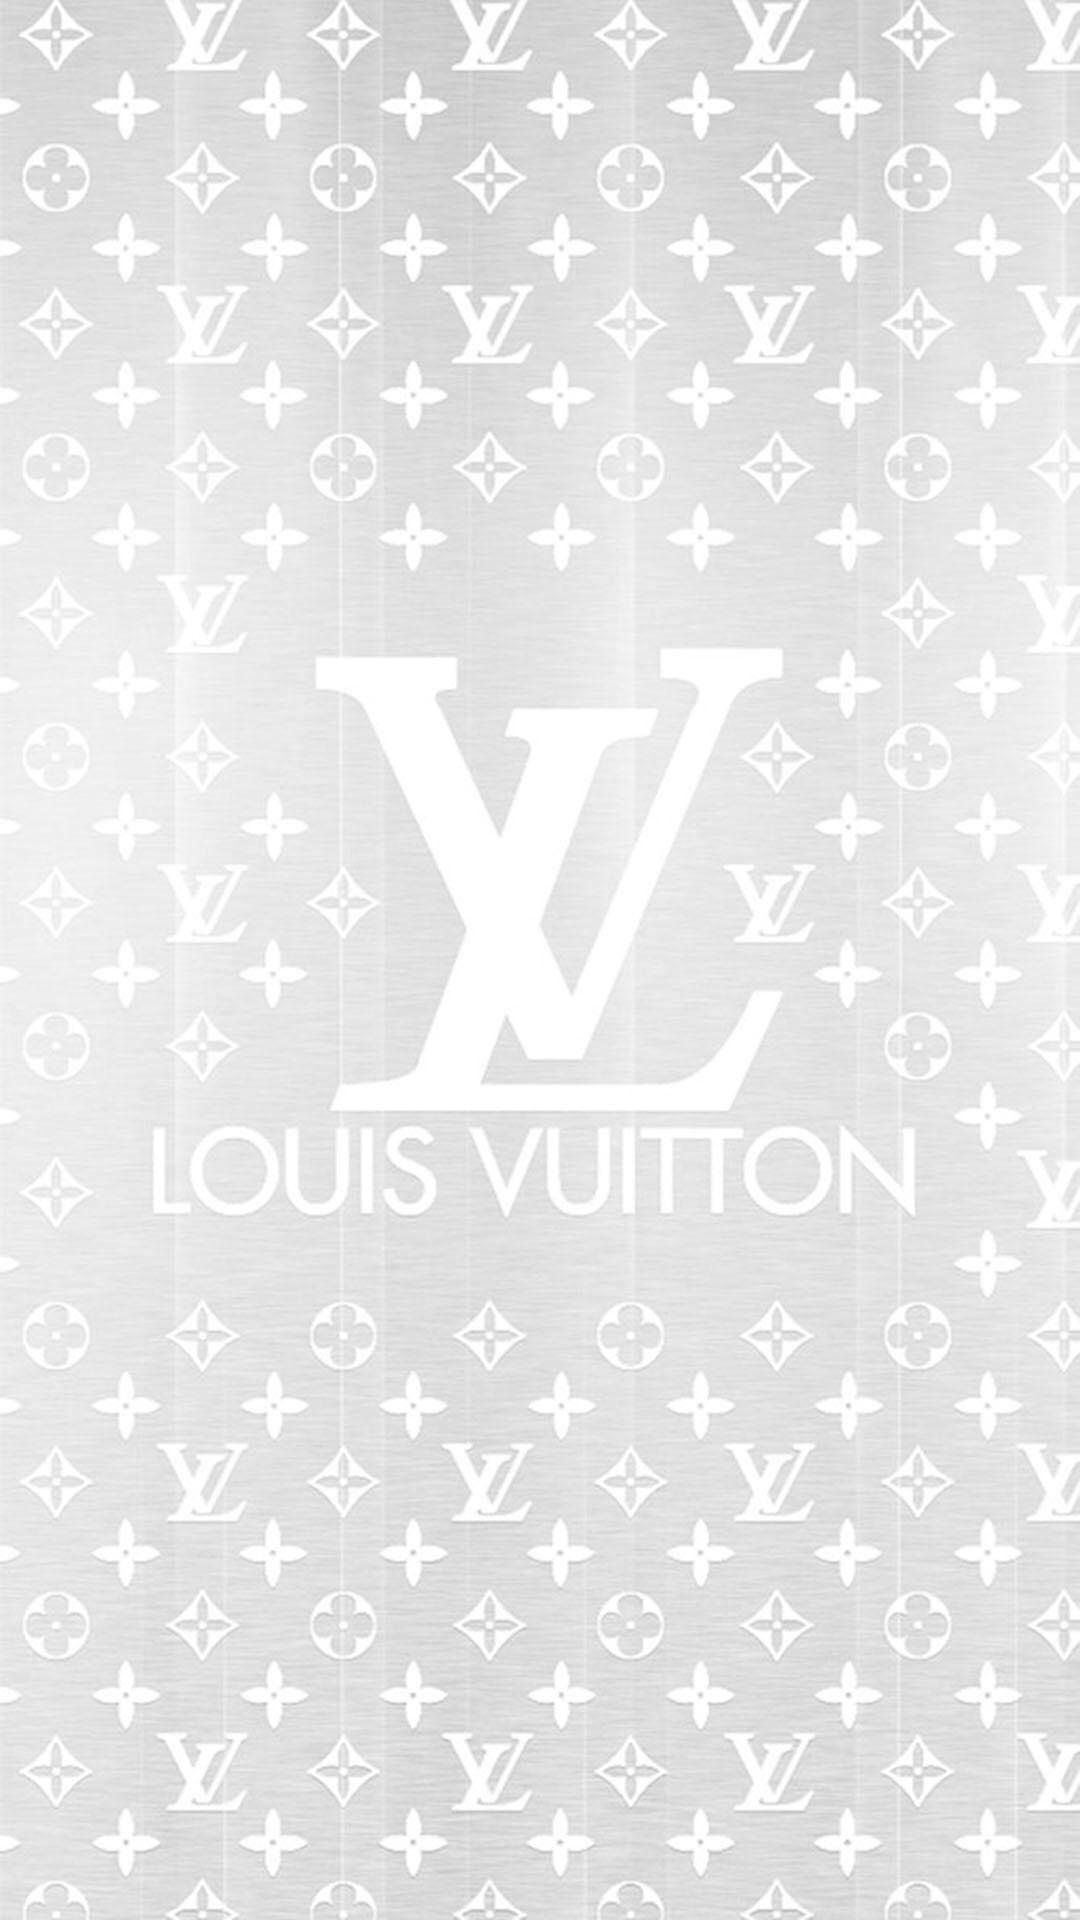 Louis Vuitton Drip Artwork by TiffanyUssery